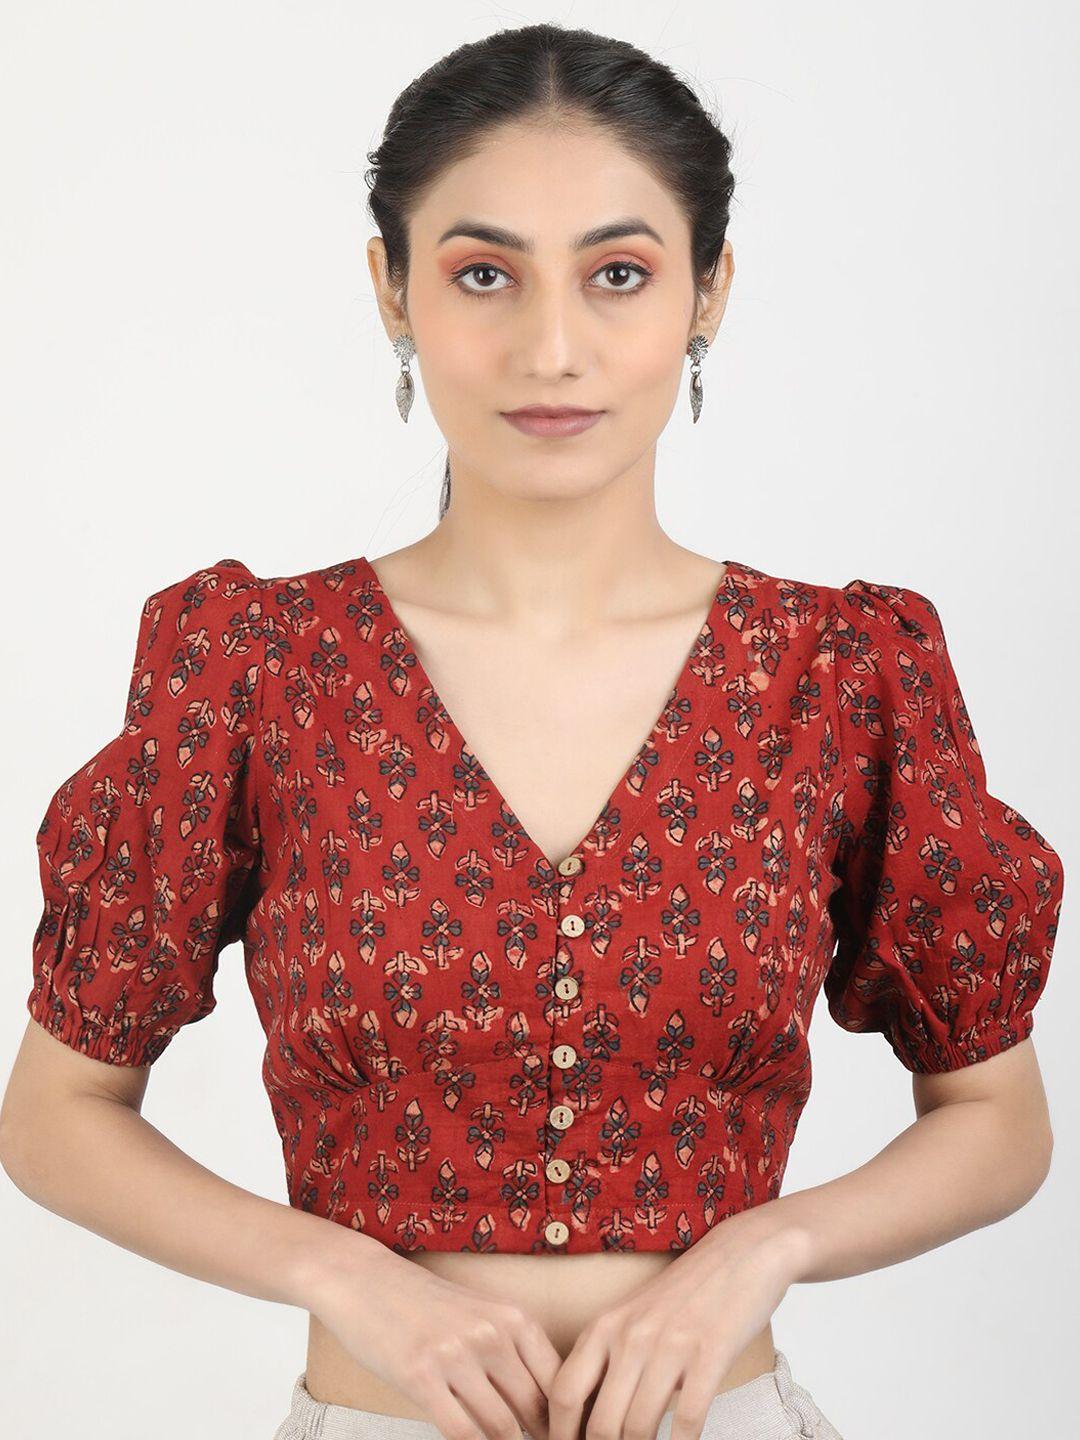 llajja block printed cotton saree blouse